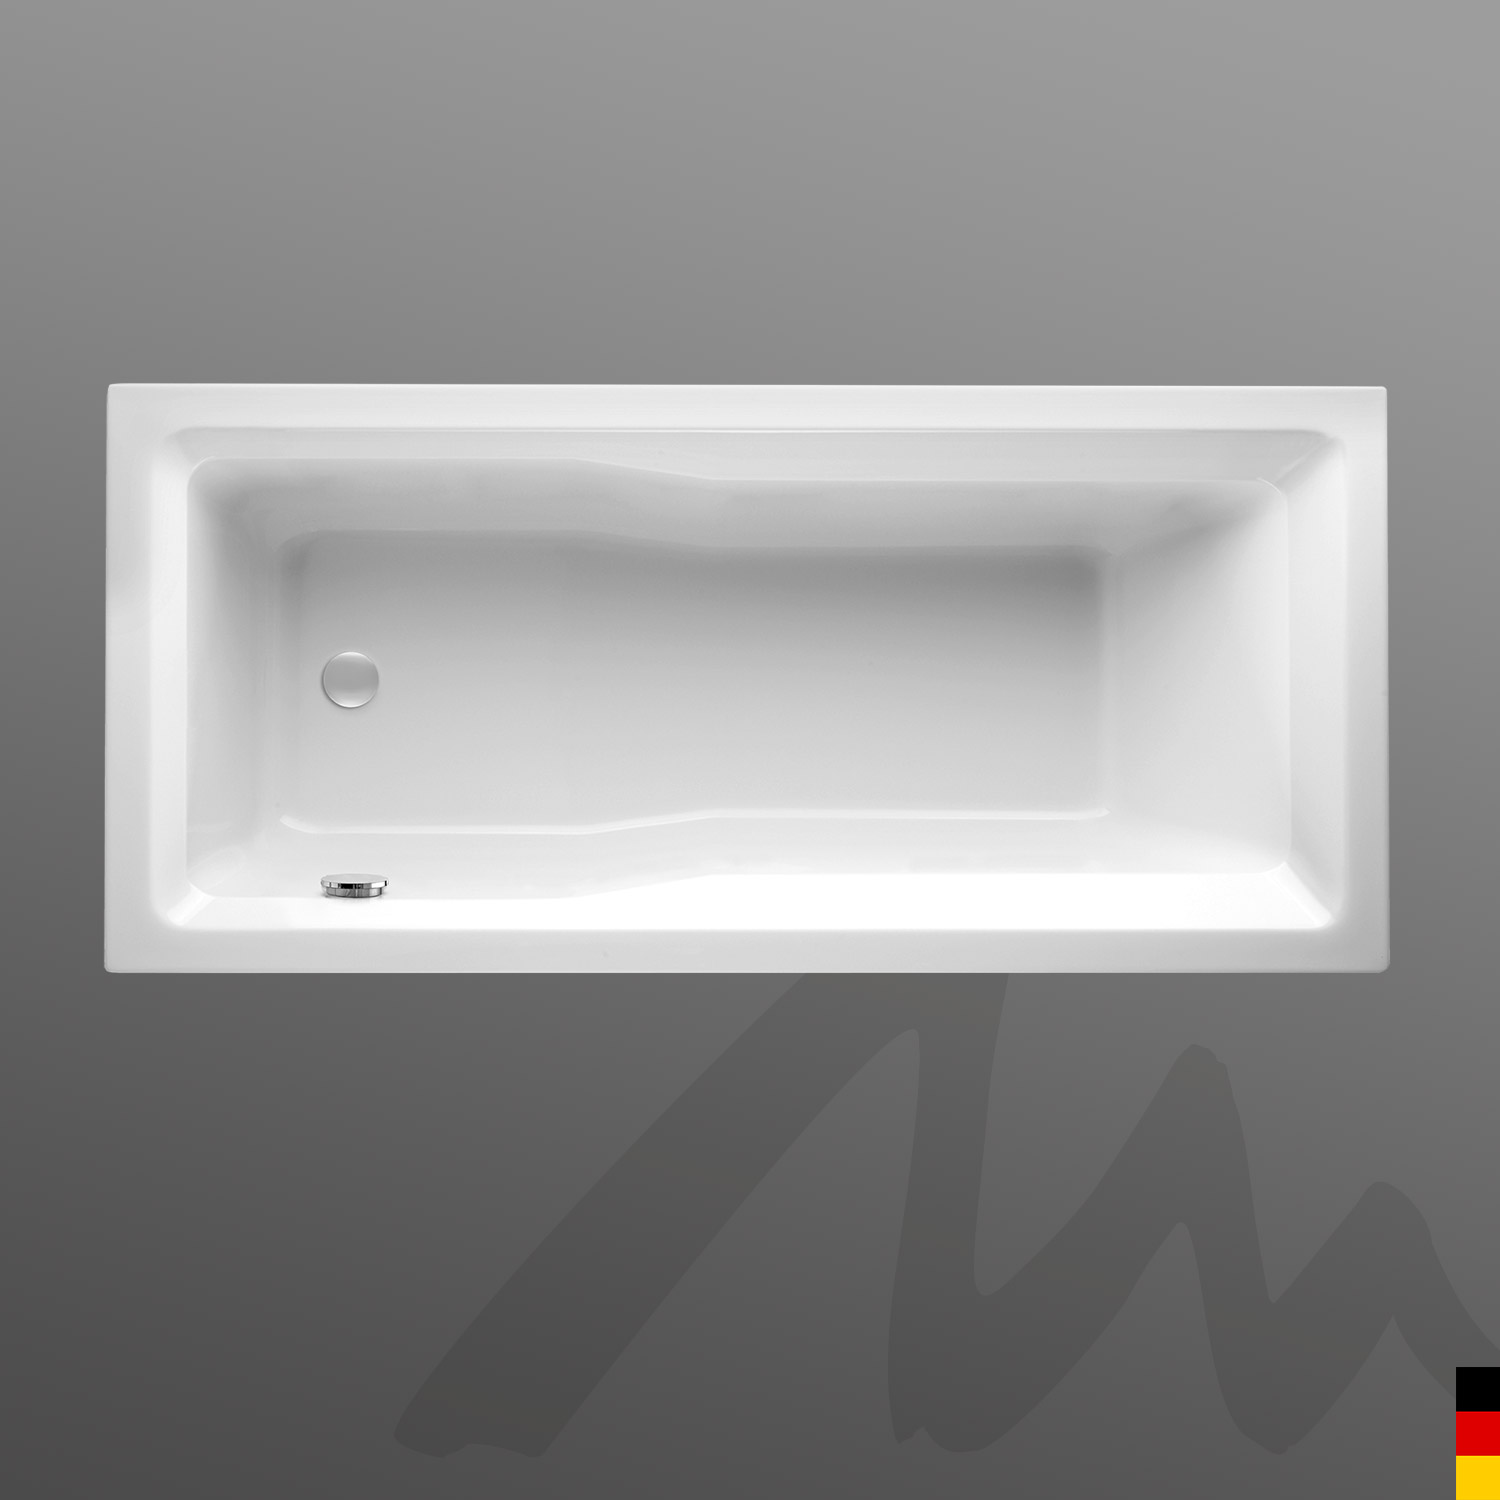 Mauersberger Badewanne Rechteck Jatro 170/75  170x75x44cm  Farbe:weiß